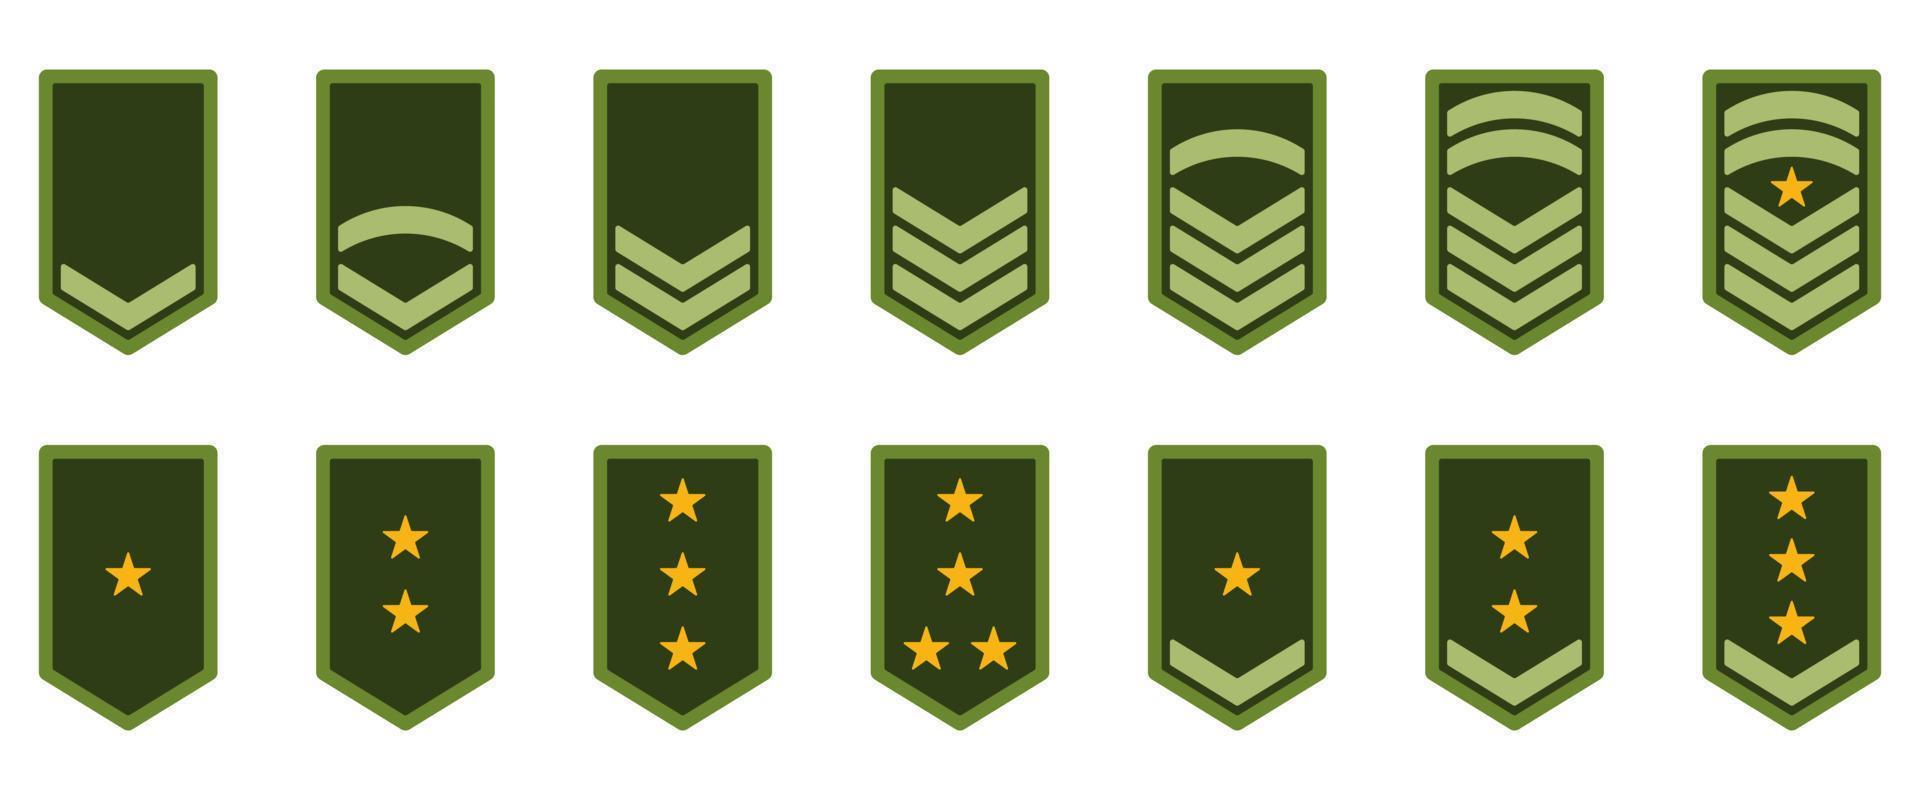 icône de rang de l'armée. insigne militaire insigne symbole vert. logo étoile et rayures jaune chevron. sergent soldat, major, officier, général, lieutenant, colonel emblème. illustration vectorielle isolée vecteur